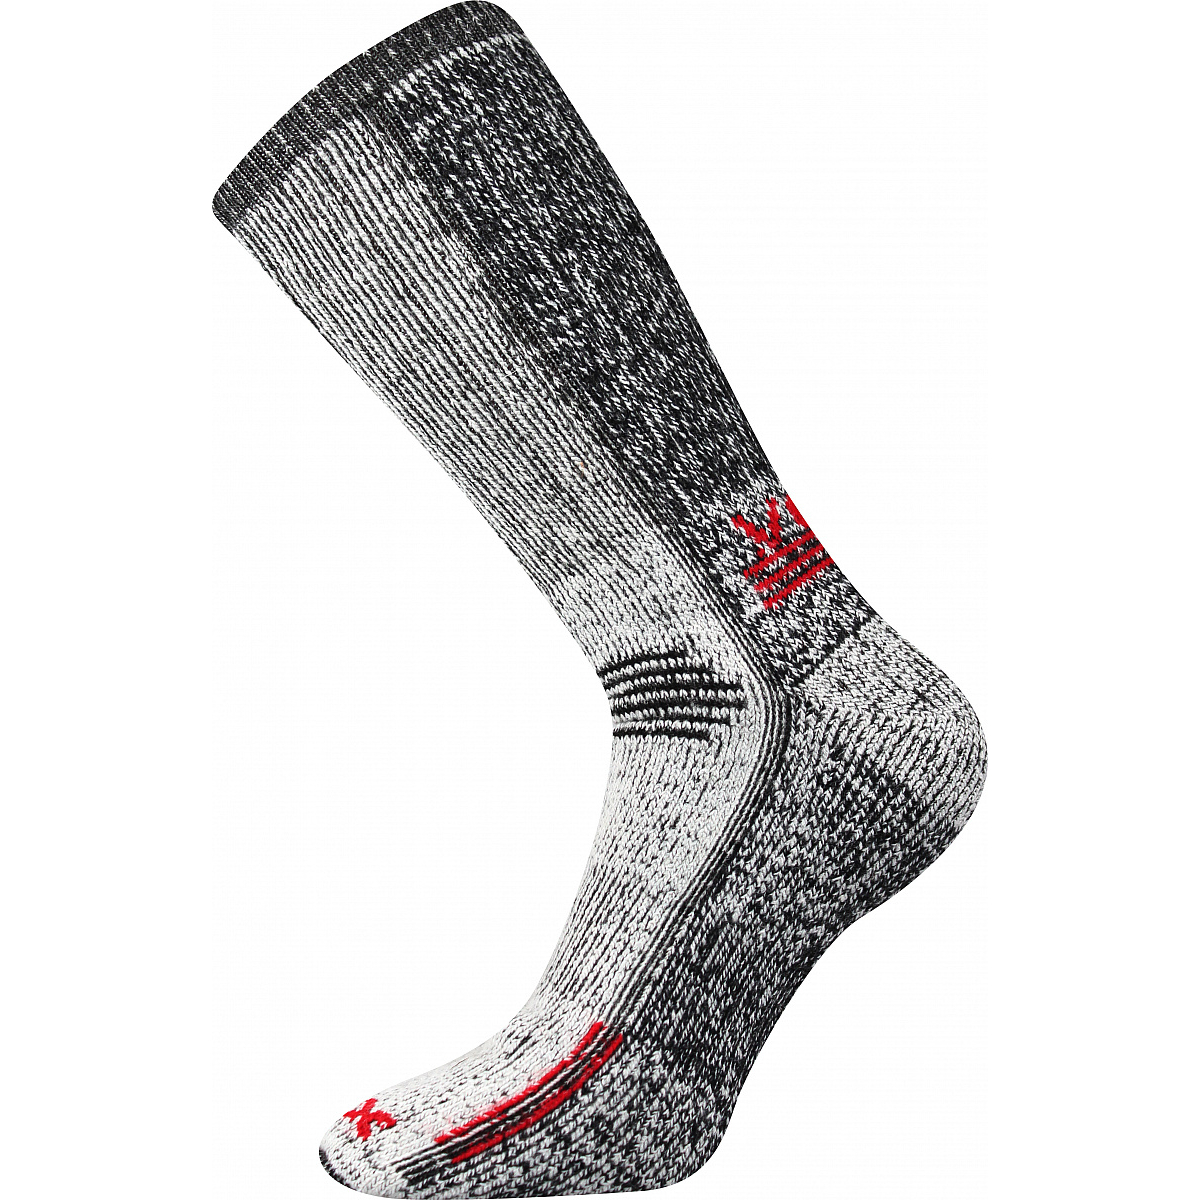 Extra teplé vlněné ponožky Voxx Orbit - šedé-červené, 43-46